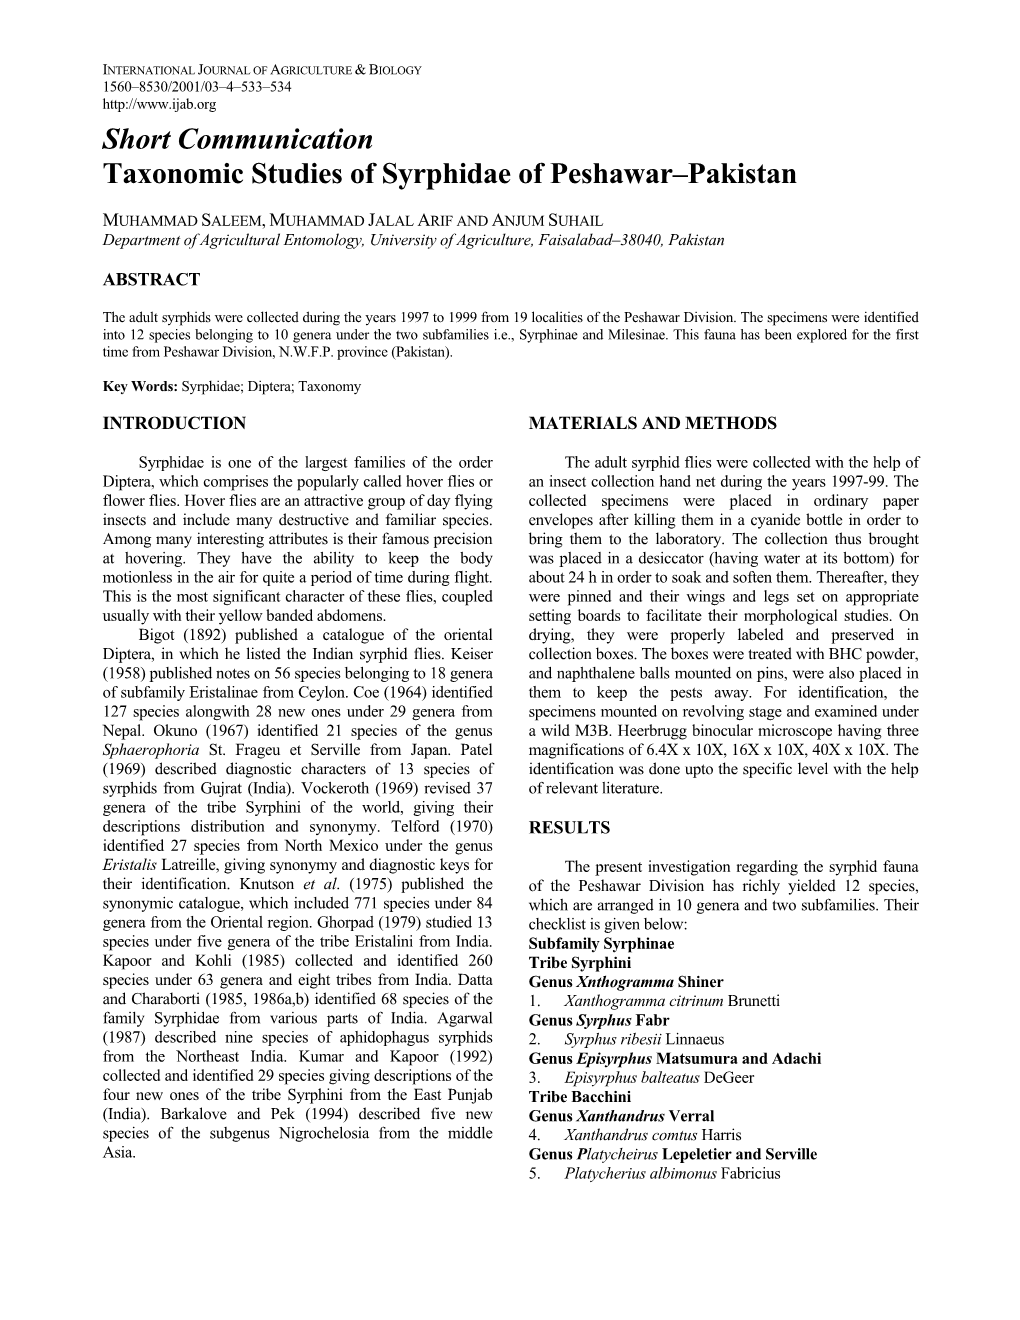 Short Communication Taxonomic Studies of Syrphidae of Peshawar–Pakistan